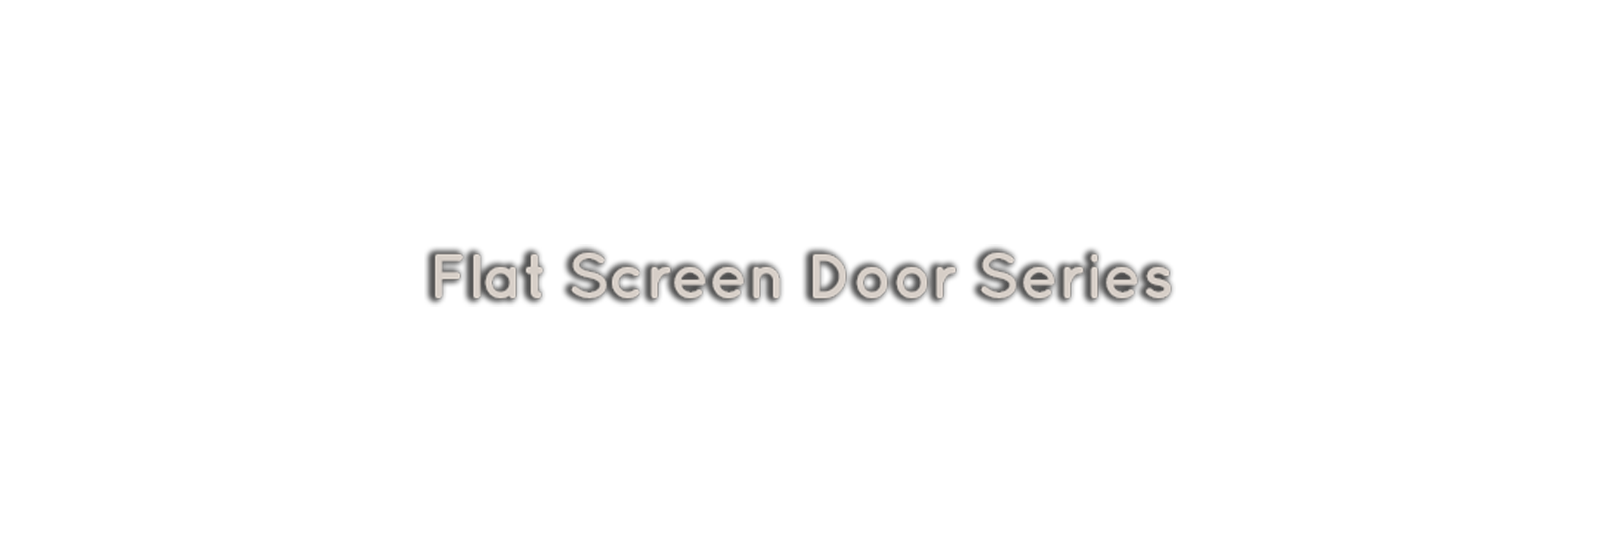 Flat Screen Door Series